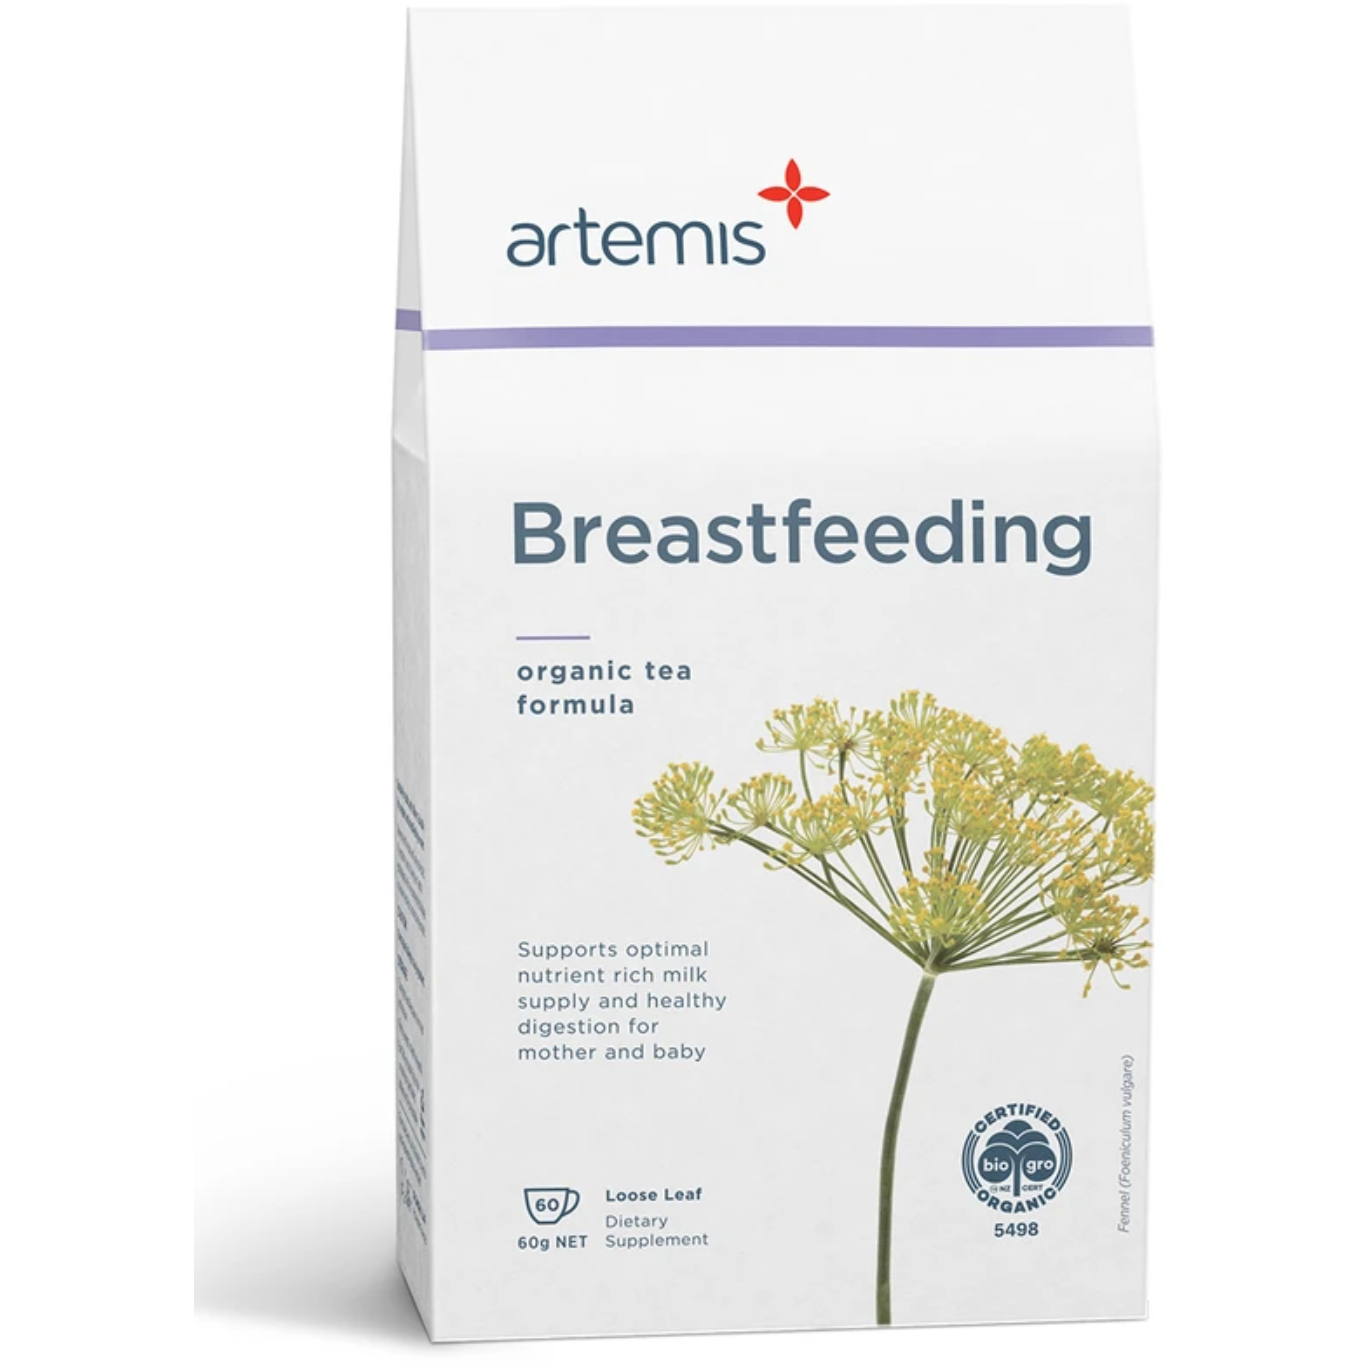 Artemis Breastfeeding Tea 60g